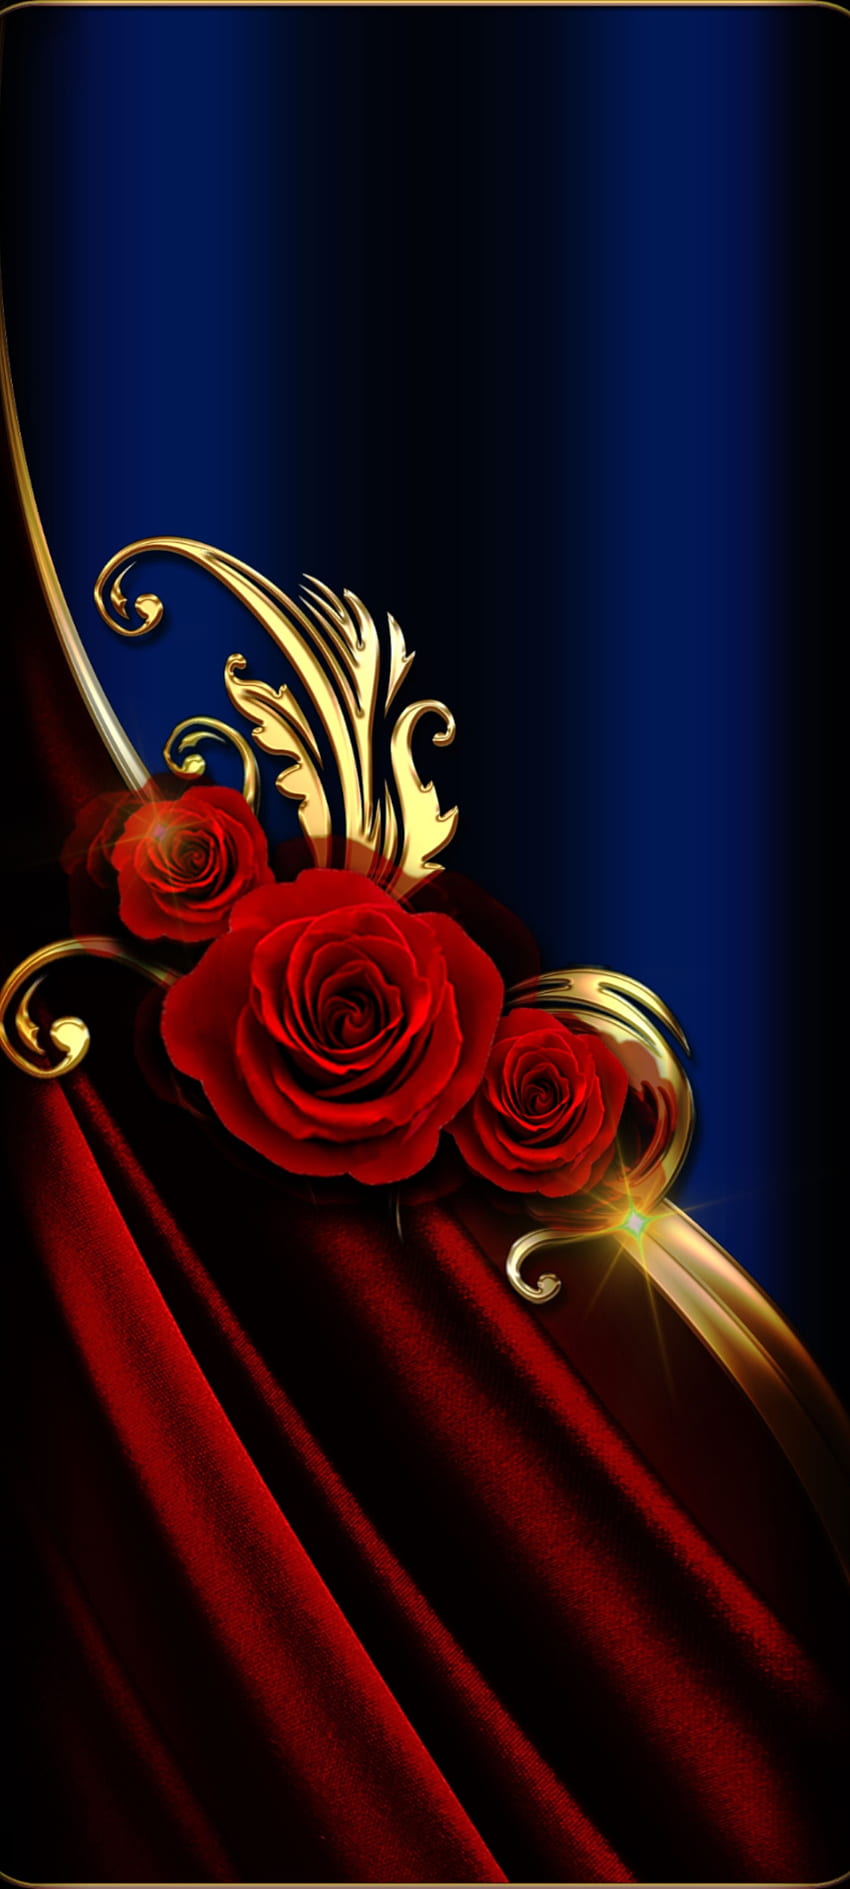 Mawar Sutra Merah, mawar teh hibrida, magenta, biru, logam, mewah wallpaper ponsel HD